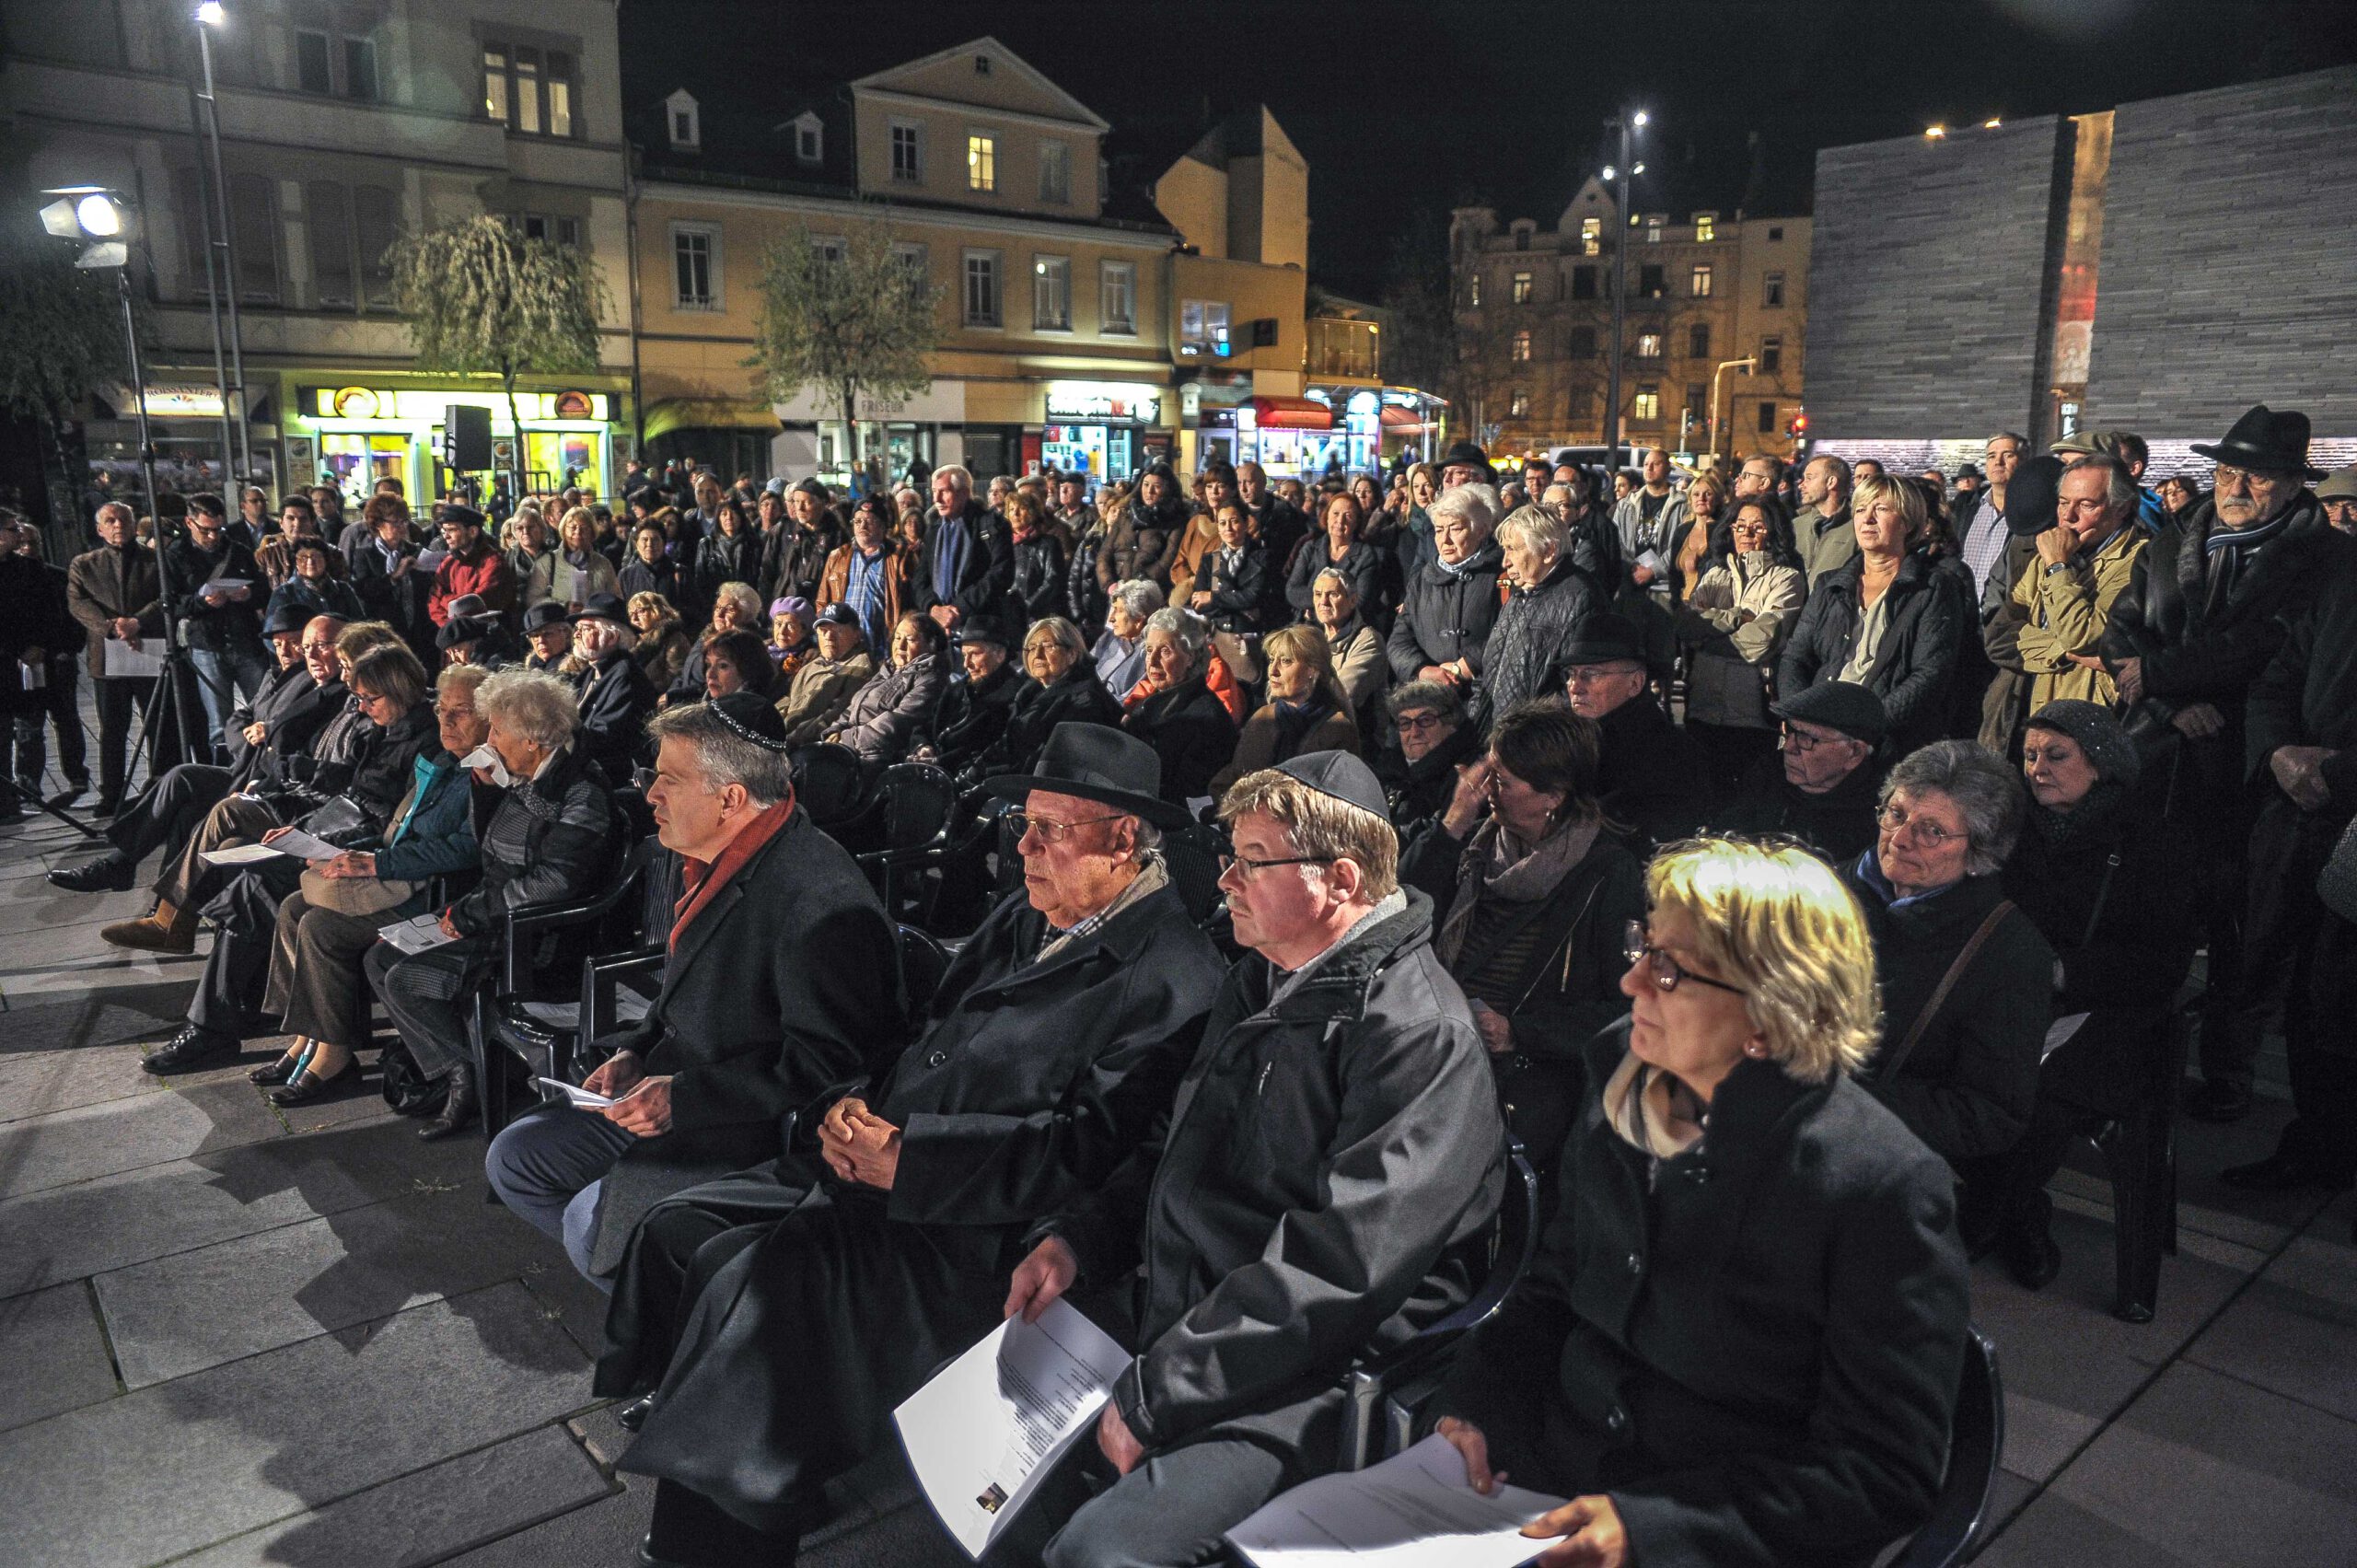 Commémoration des pogroms de novembre au mémorial pour les juifs assassinés de Wiesbaden. Photographe : Igor Eisenschtat. Collection de la communauté juive de Wiesbaden